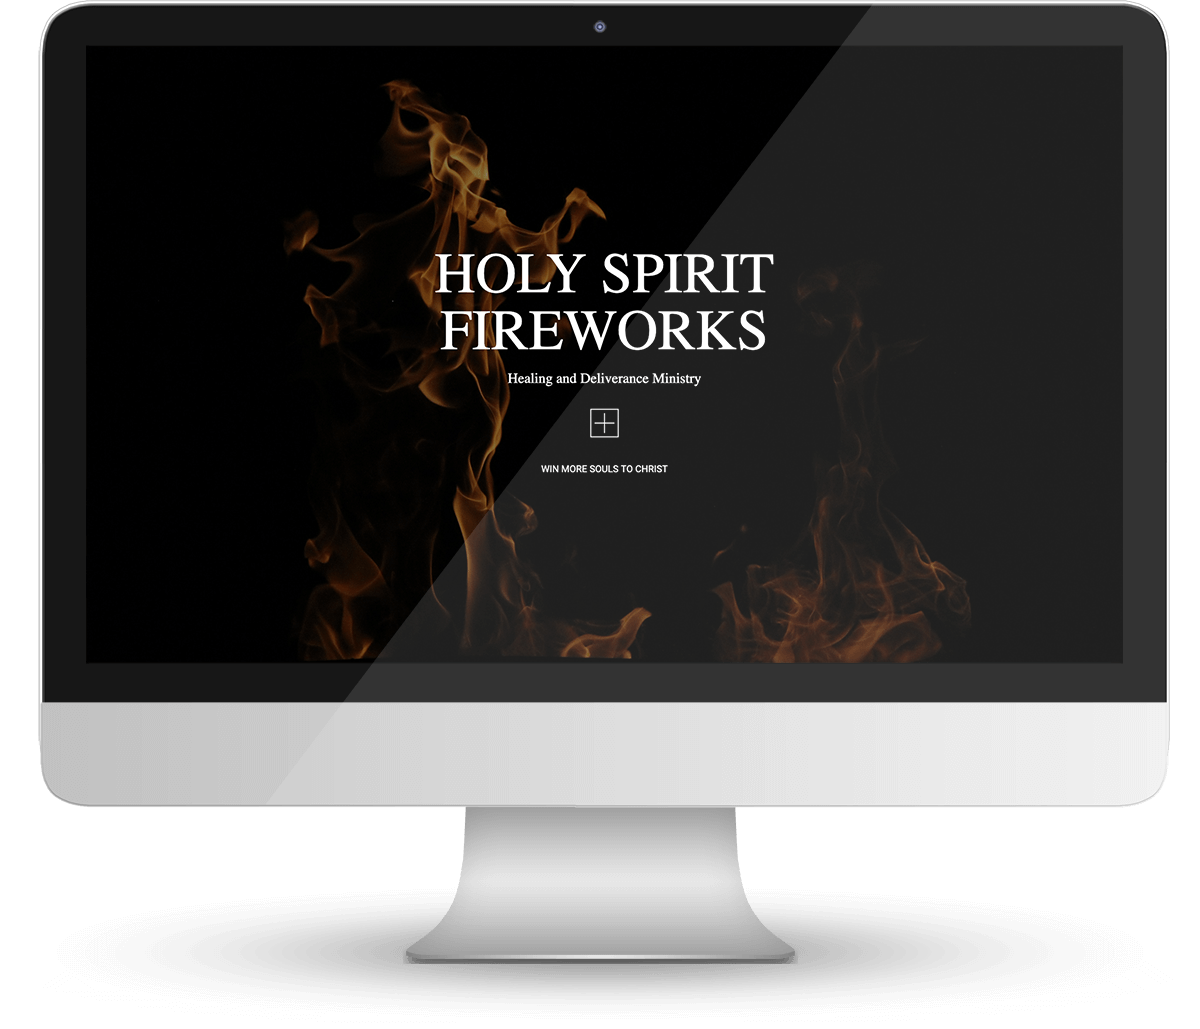 Holy Spirit Fireworks